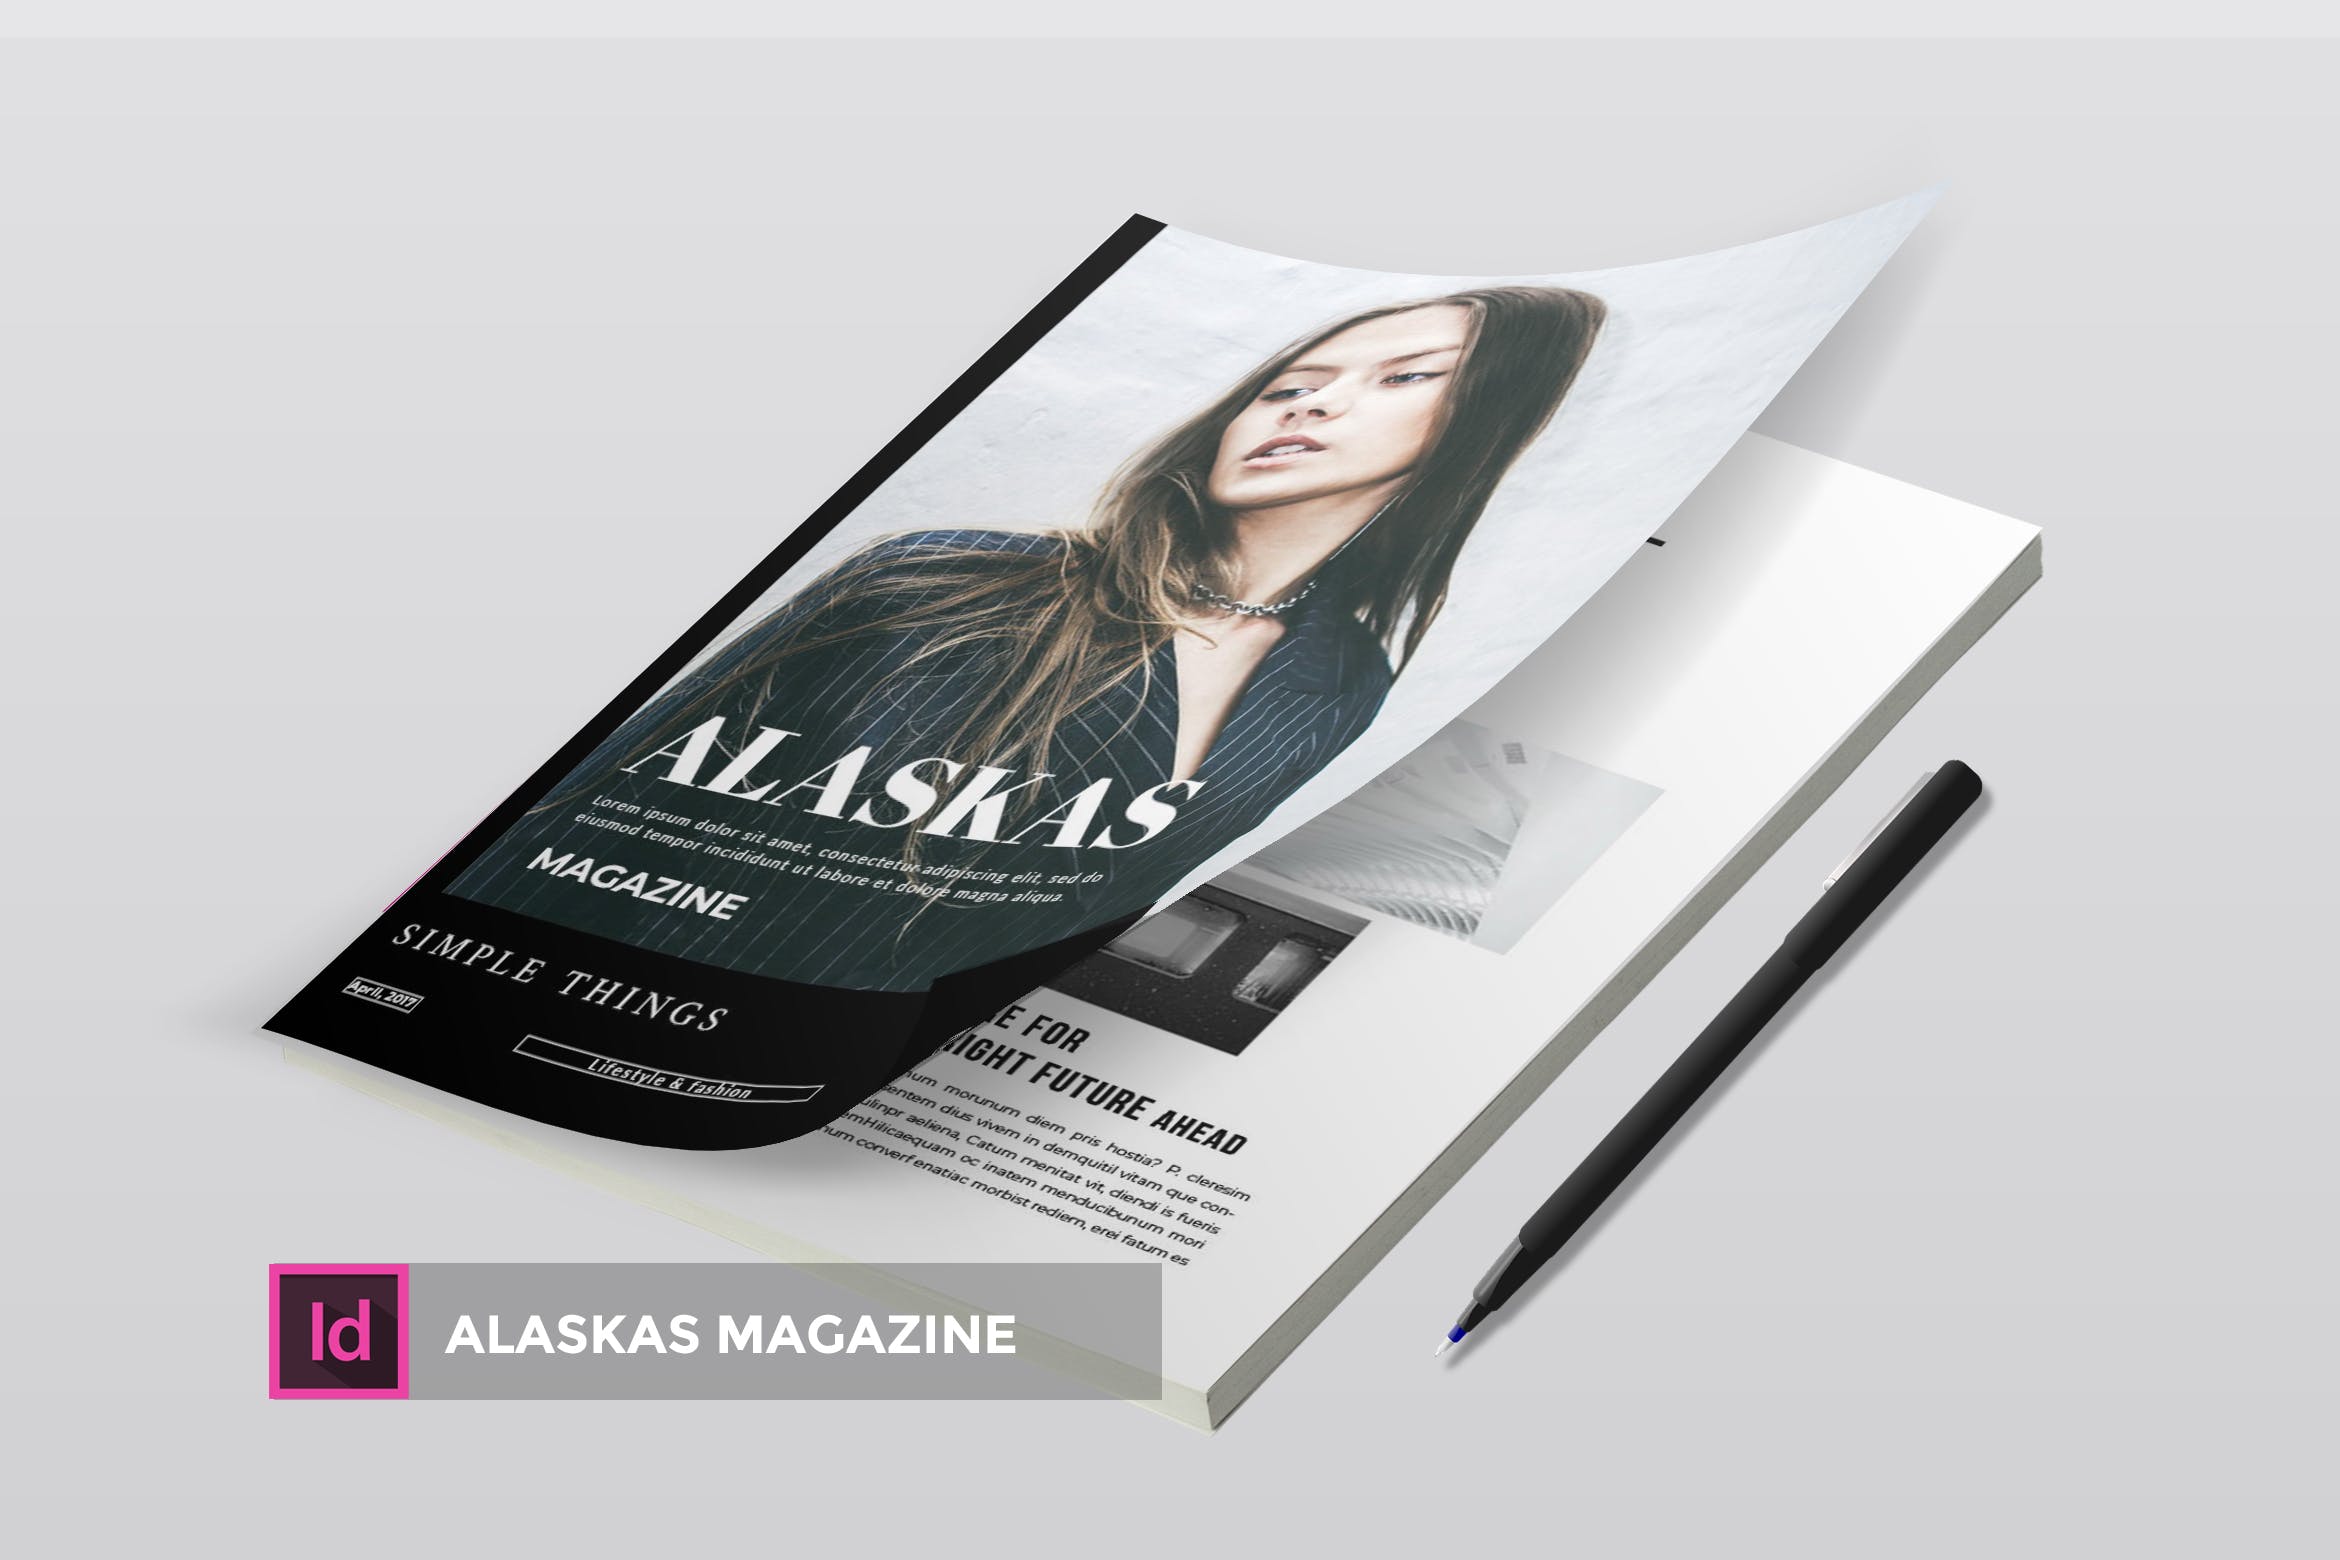 高端人物/服装/访谈主题蚂蚁素材精选杂志版式排版设计INDD模板 Alaskas | Magazine Template插图